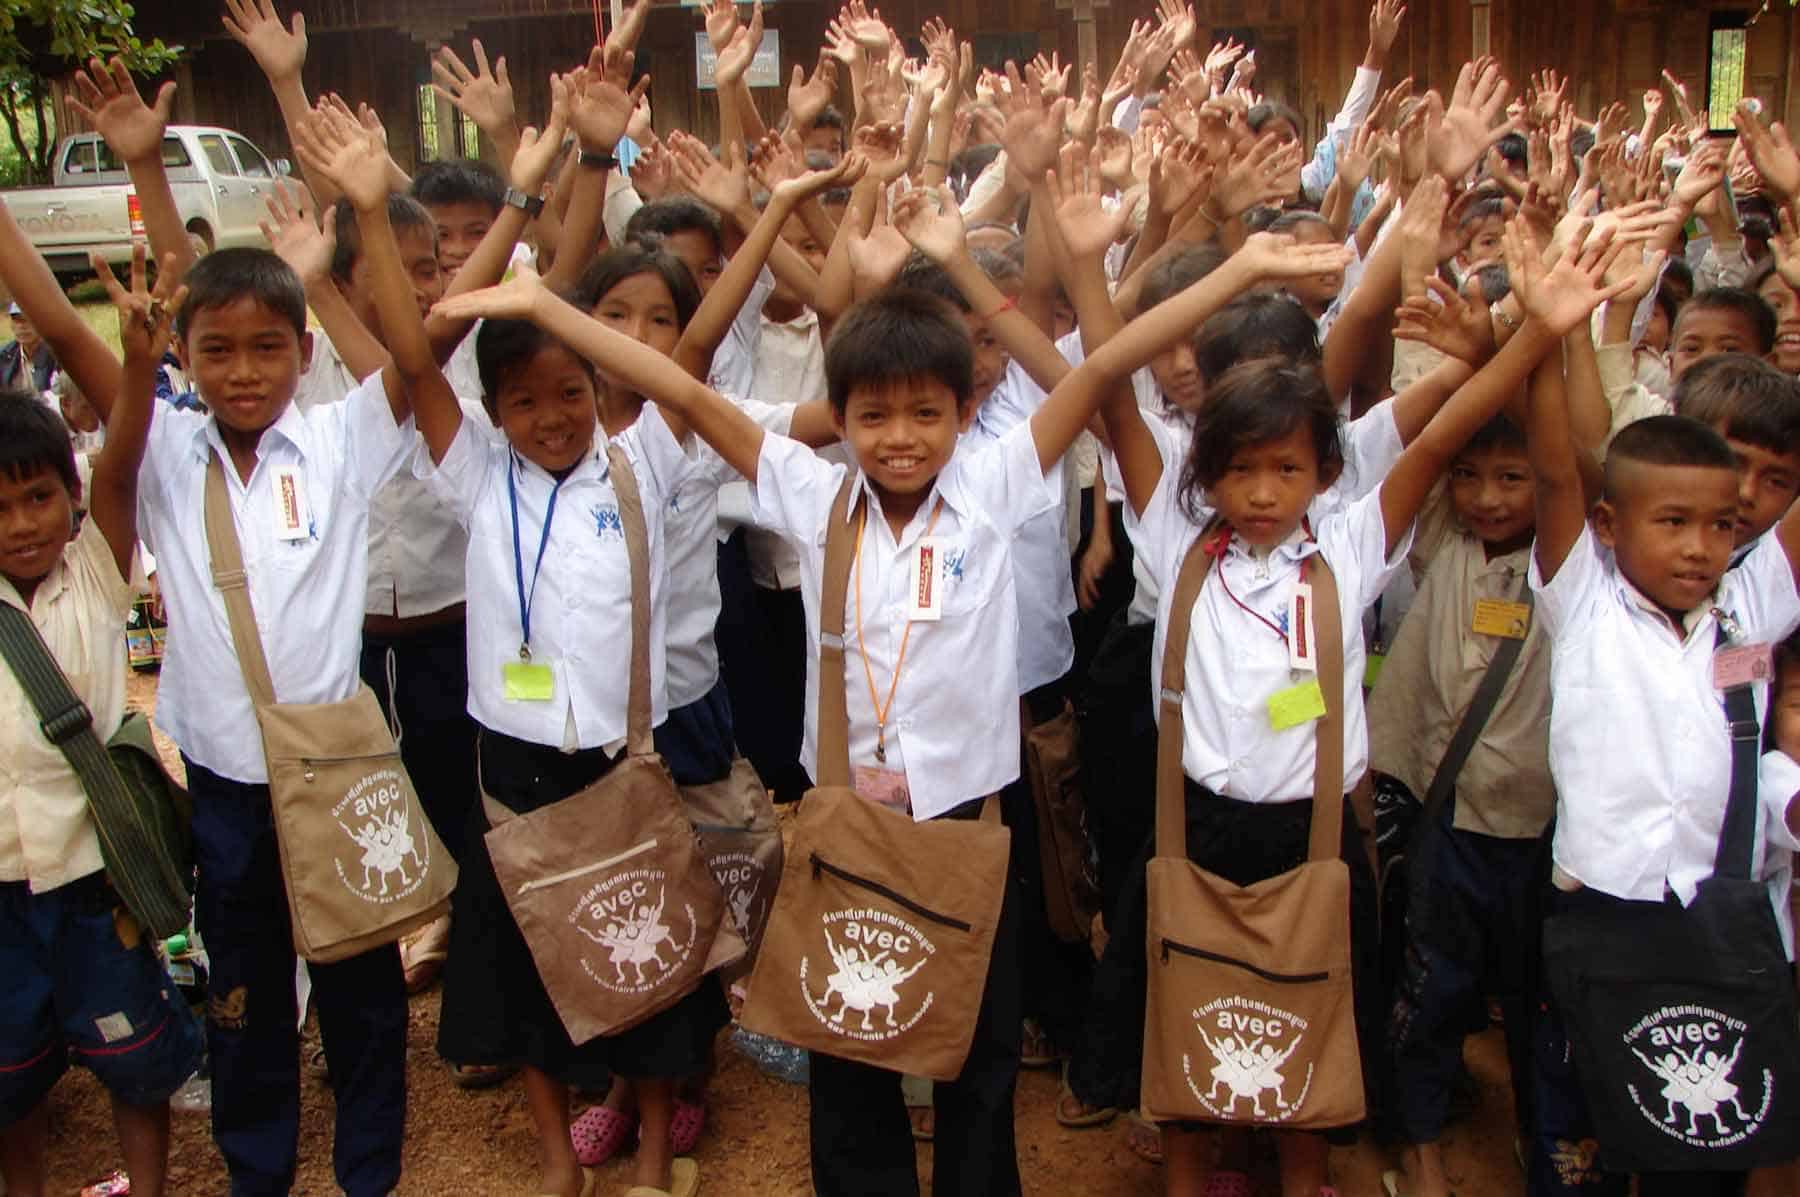 Wir sind darauf spezialisiert, arme Kinder ausfindig zu machen und auszubilden. Wir intervenieren alle zwei Monate in öffentlichen Schulen in Kambodscha, in denen viele Kinder unterrichtet werden.